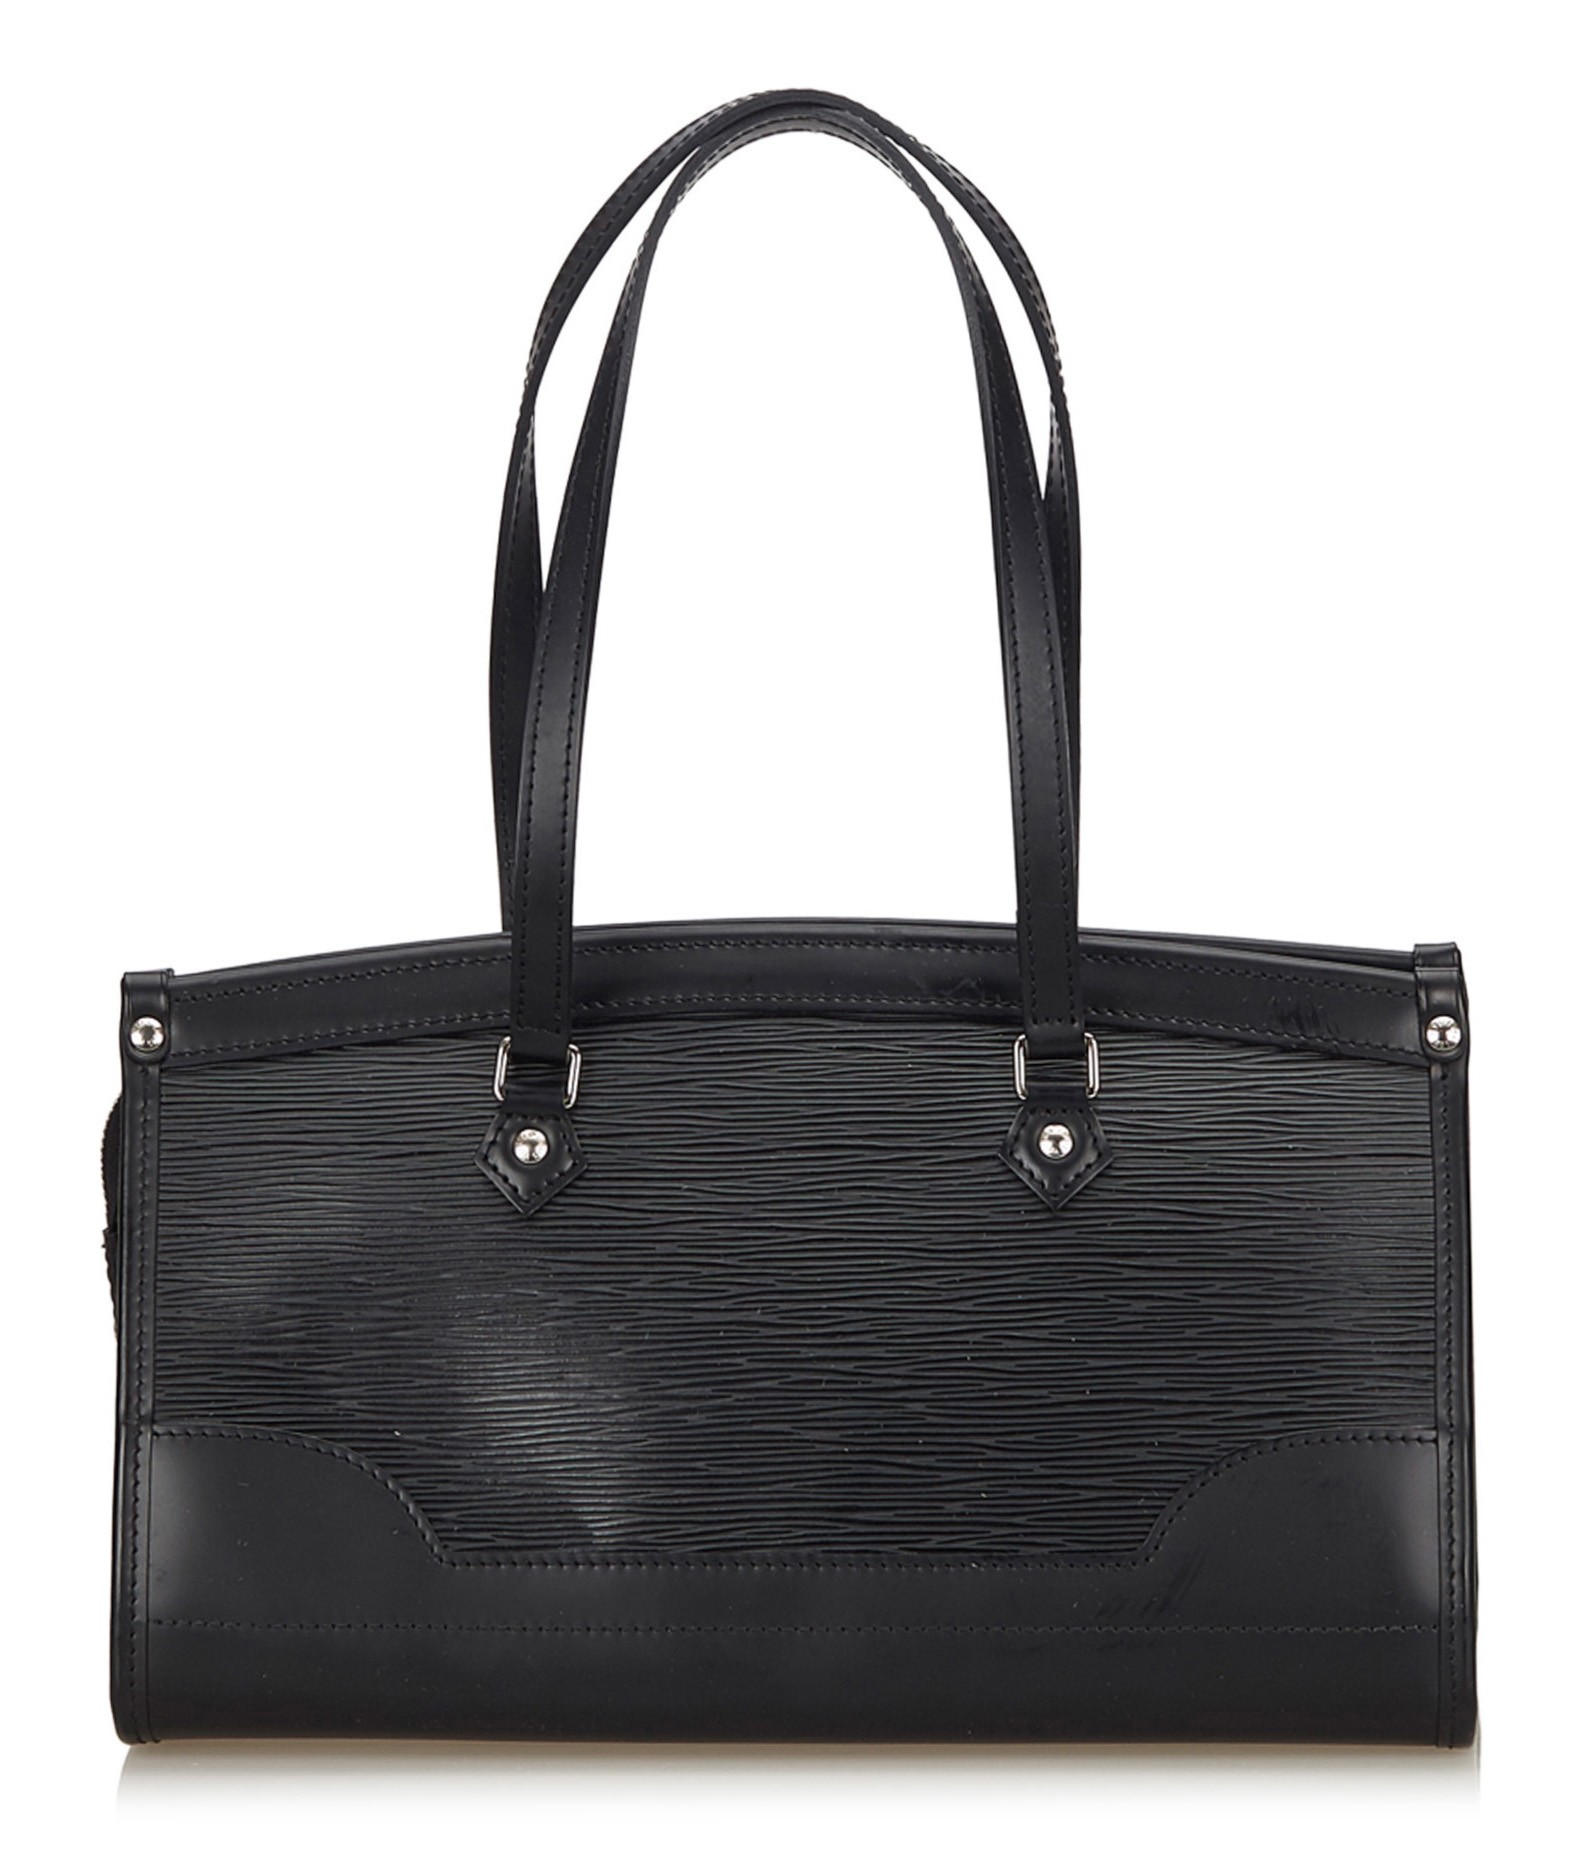 LOUIS VUITTON Black Epi Leather Randonnee PM Bag - The Purse Ladies